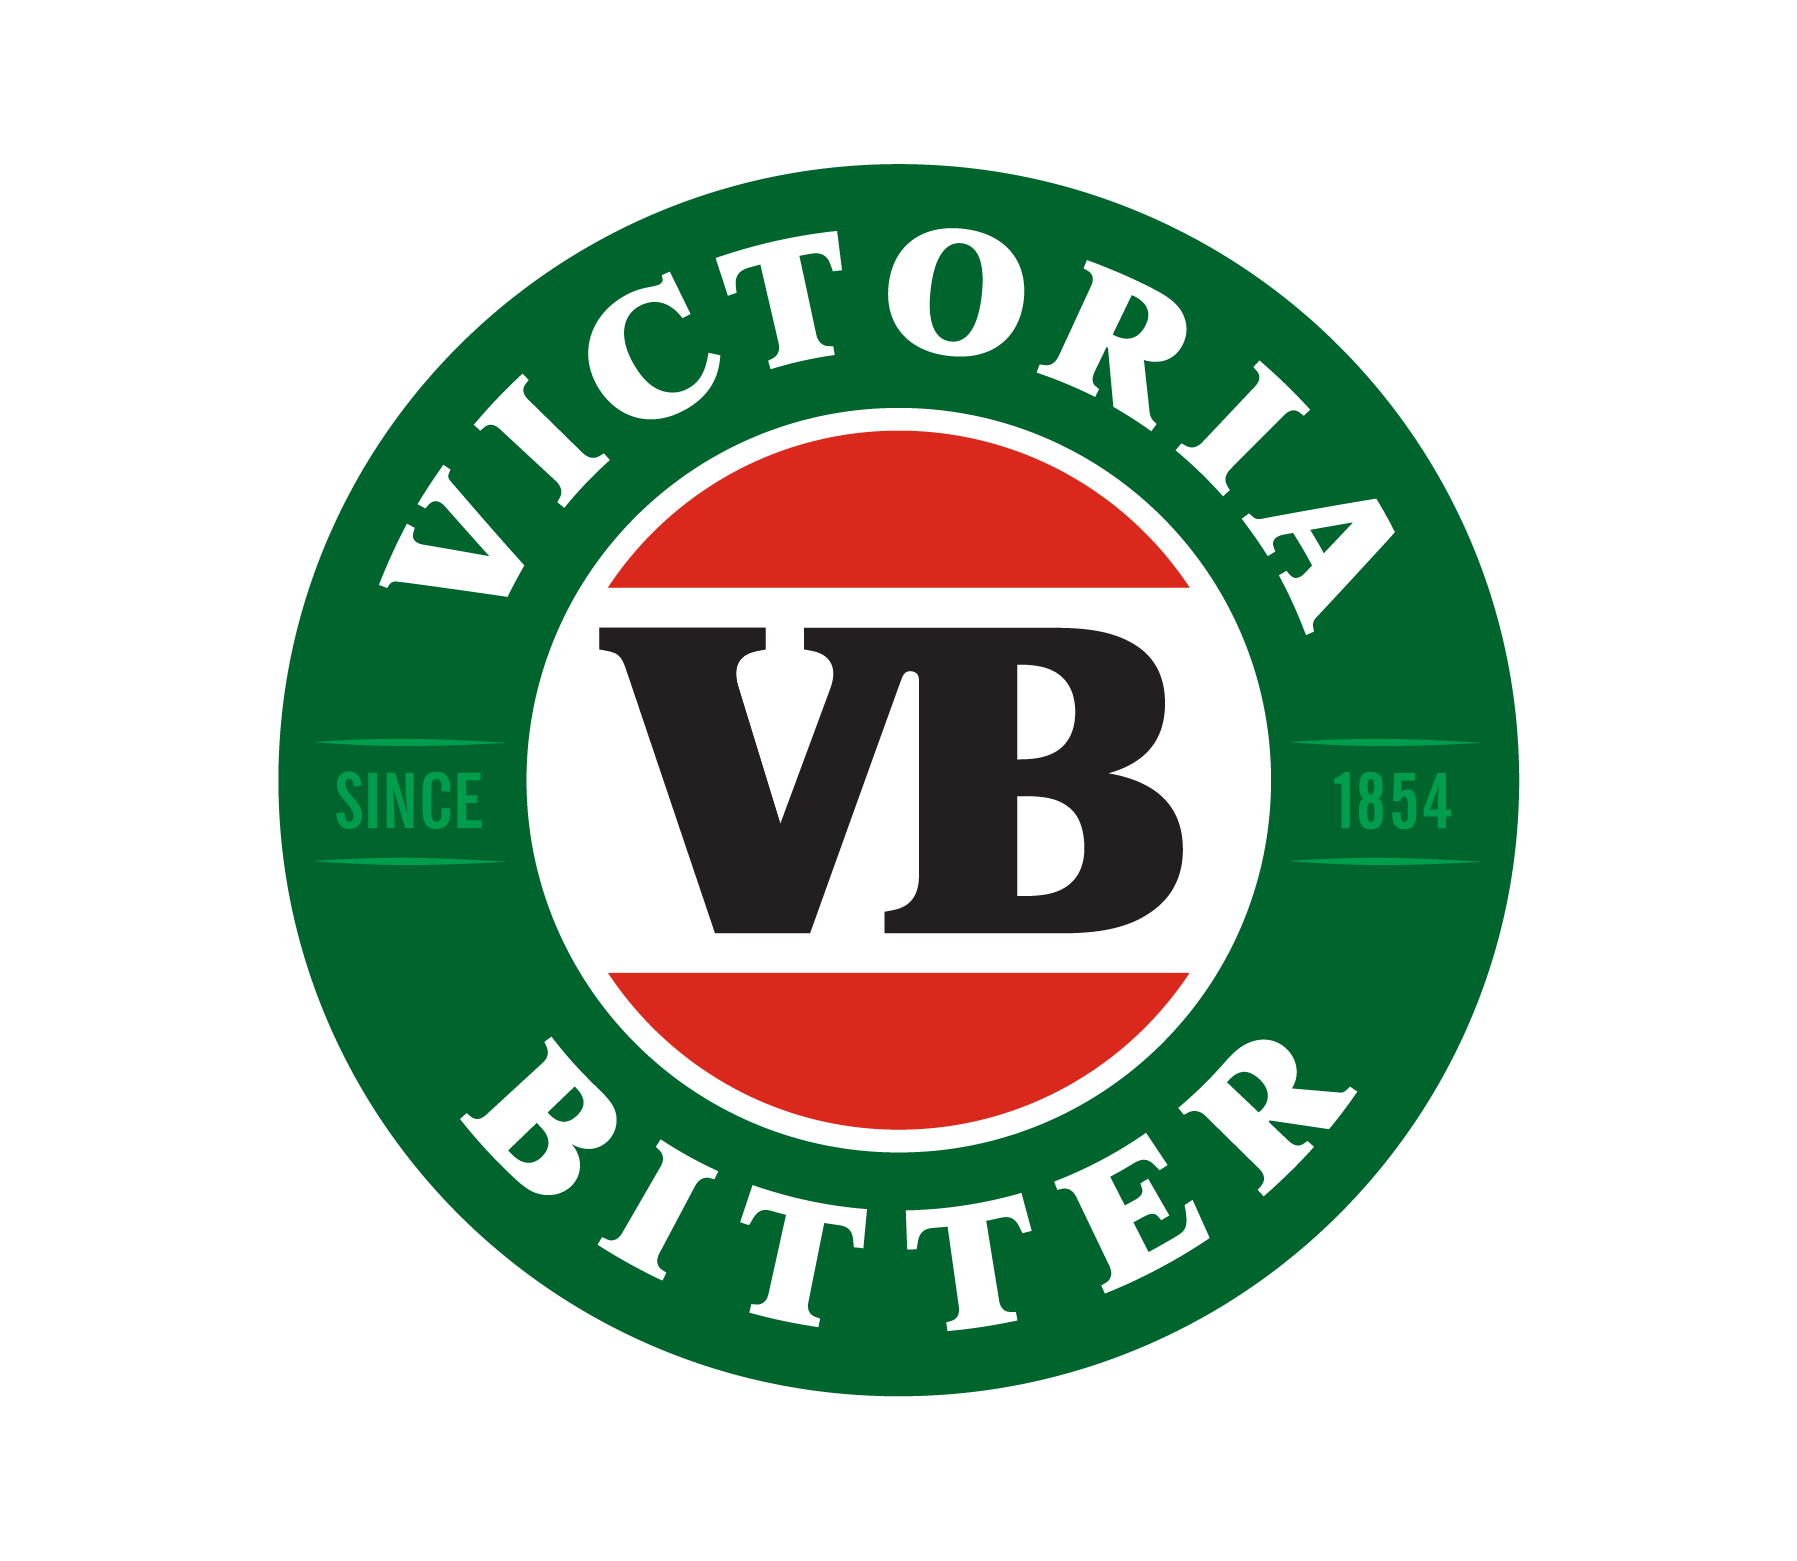 VB Logo - Big Cold Beer Poster